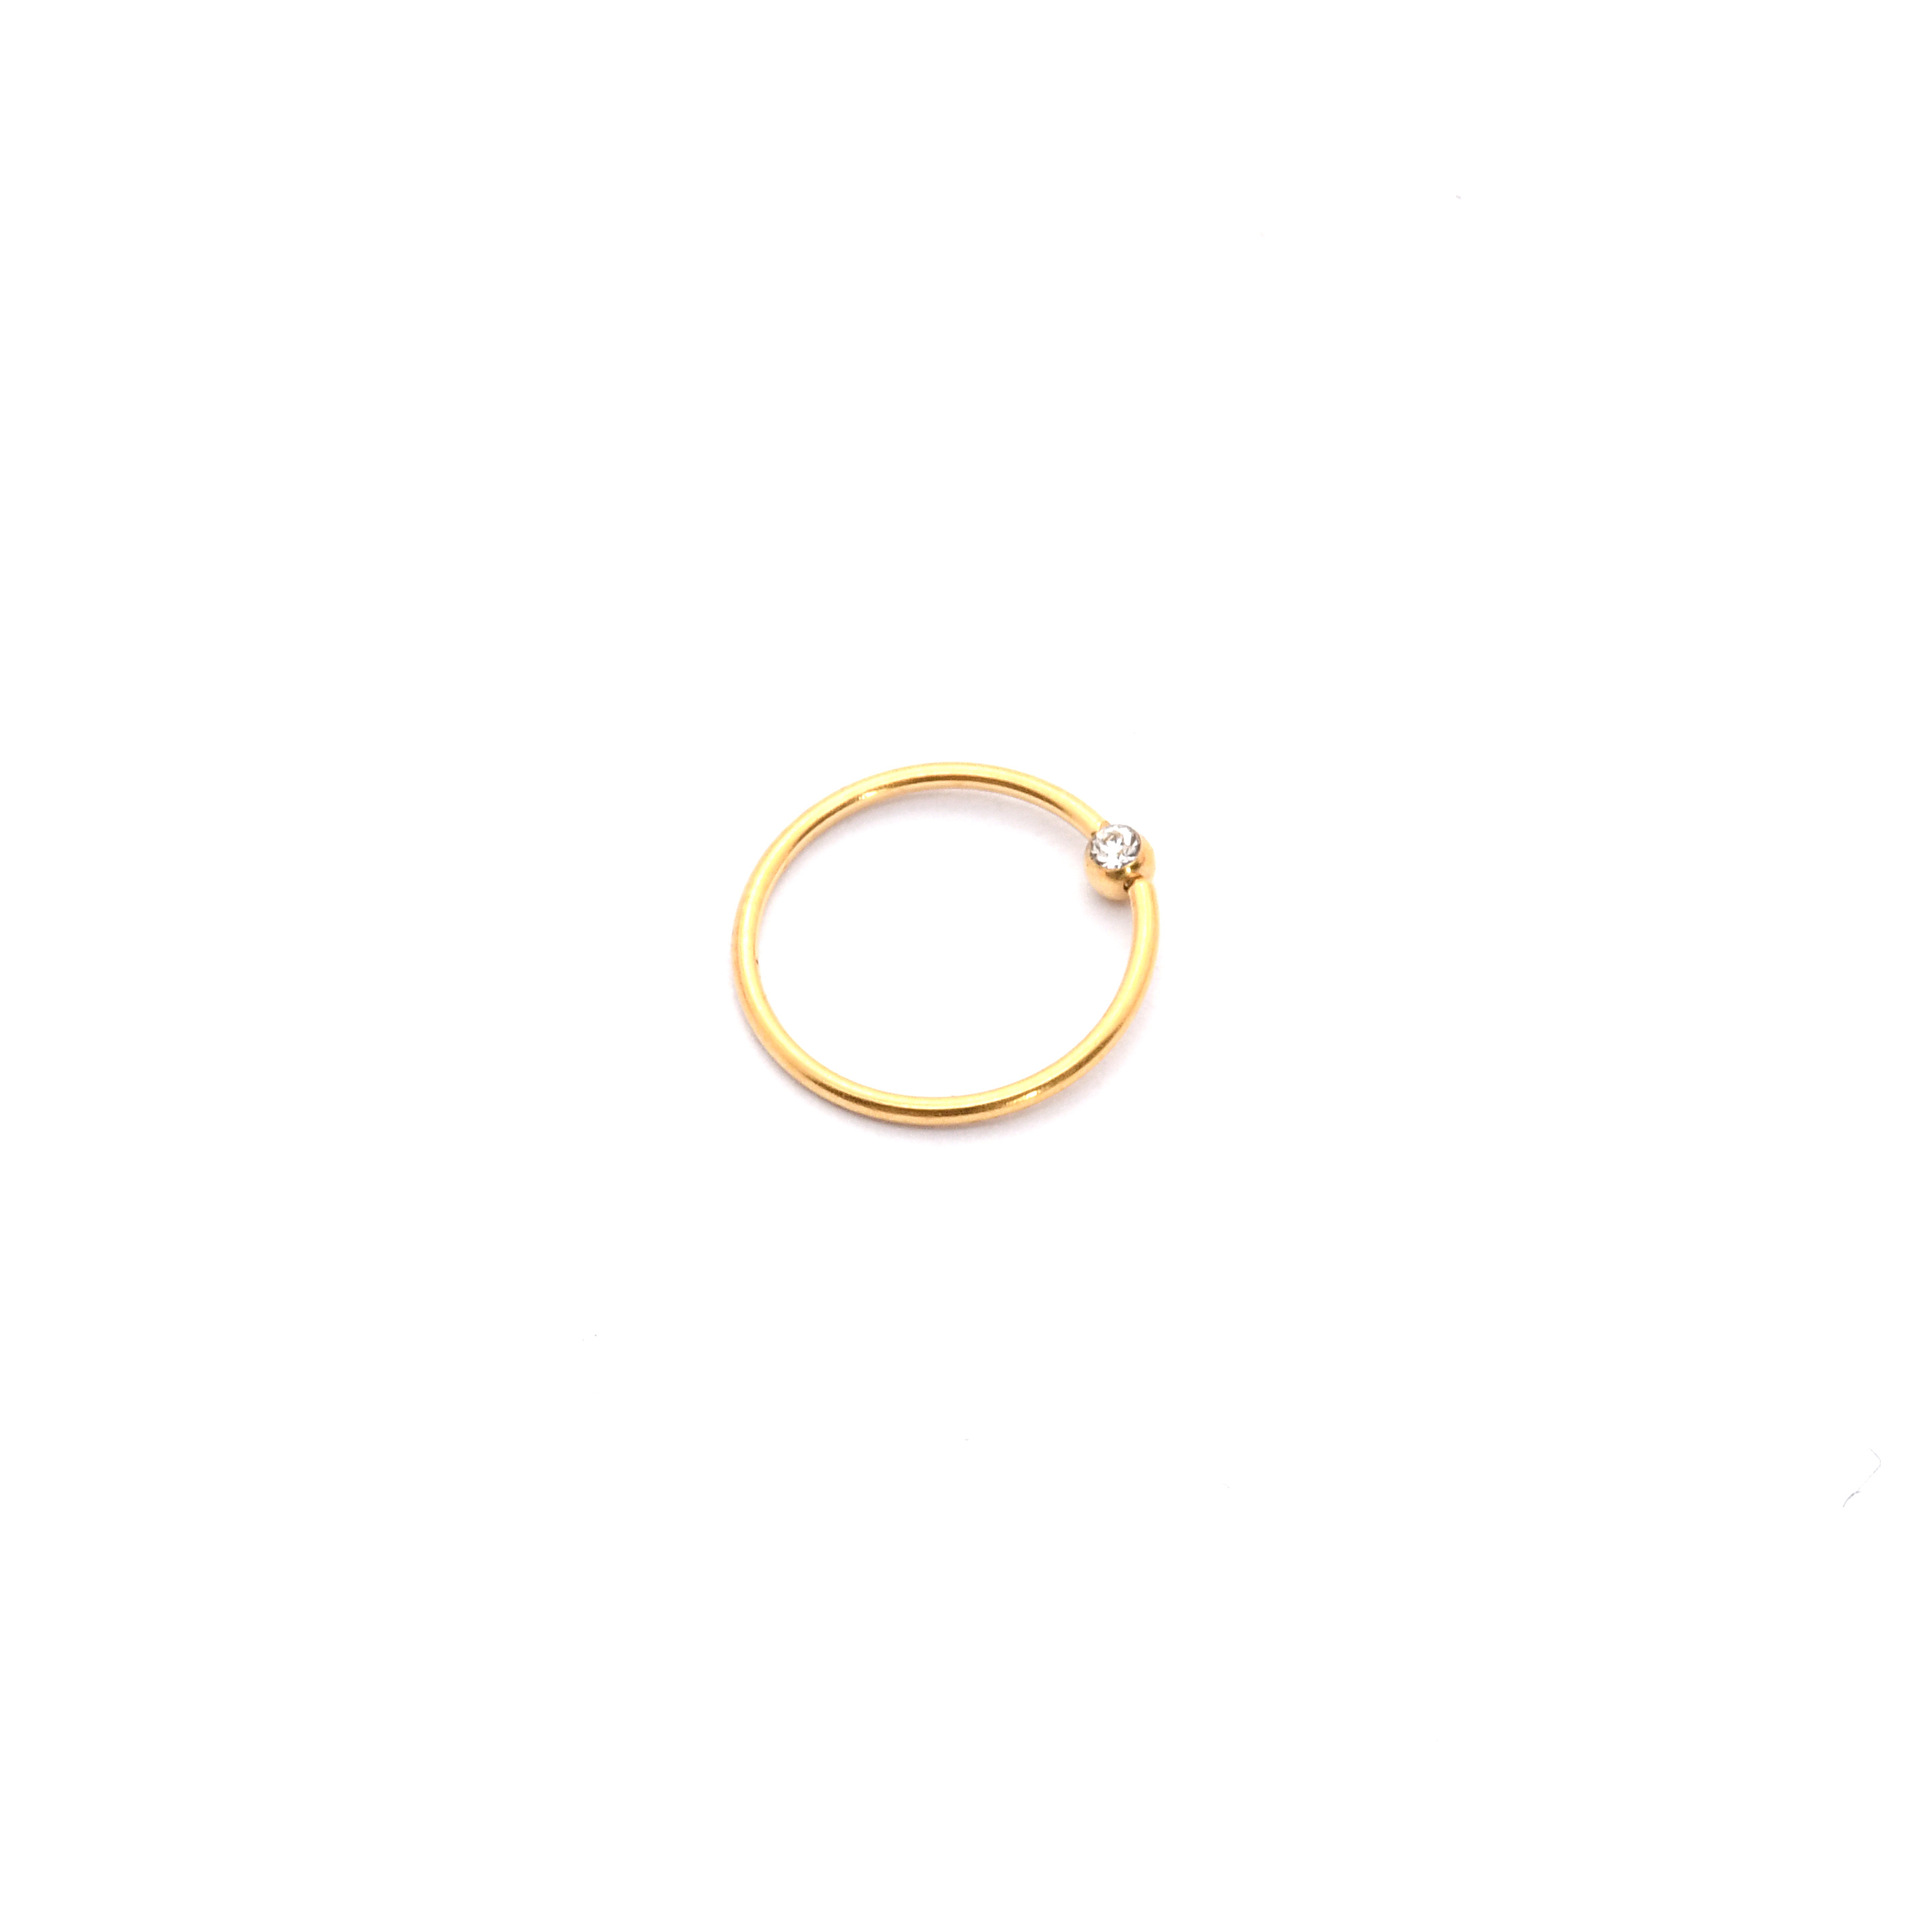 Gold inner diameter 10mm